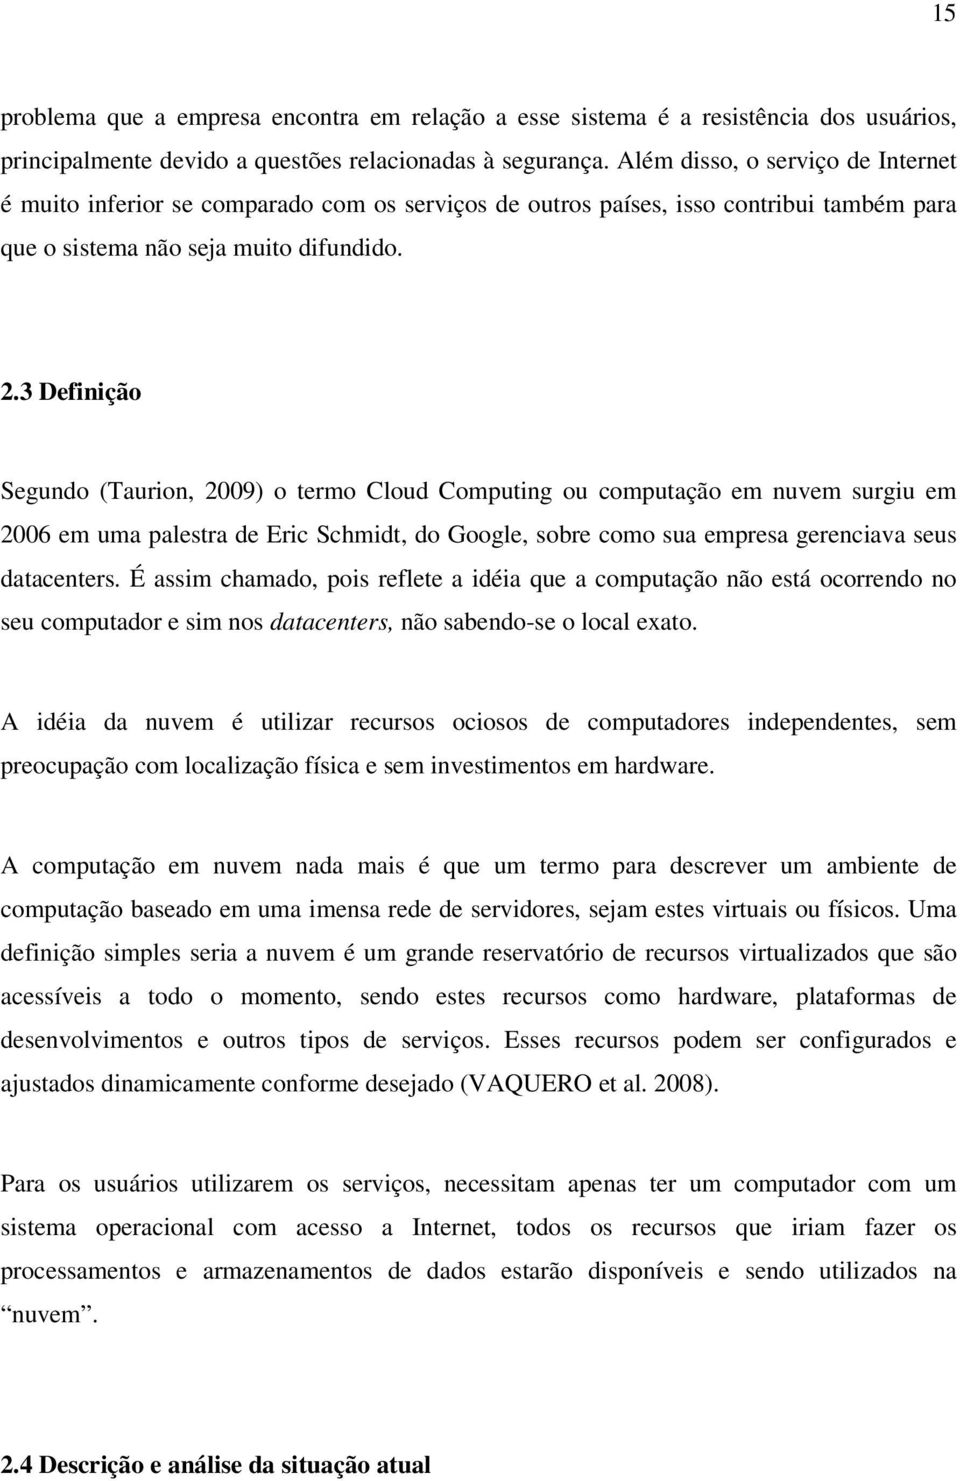 3 Definição Segundo (Taurion, 2009) o termo Cloud Computing ou computação em nuvem surgiu em 2006 em uma palestra de Eric Schmidt, do Google, sobre como sua empresa gerenciava seus datacenters.